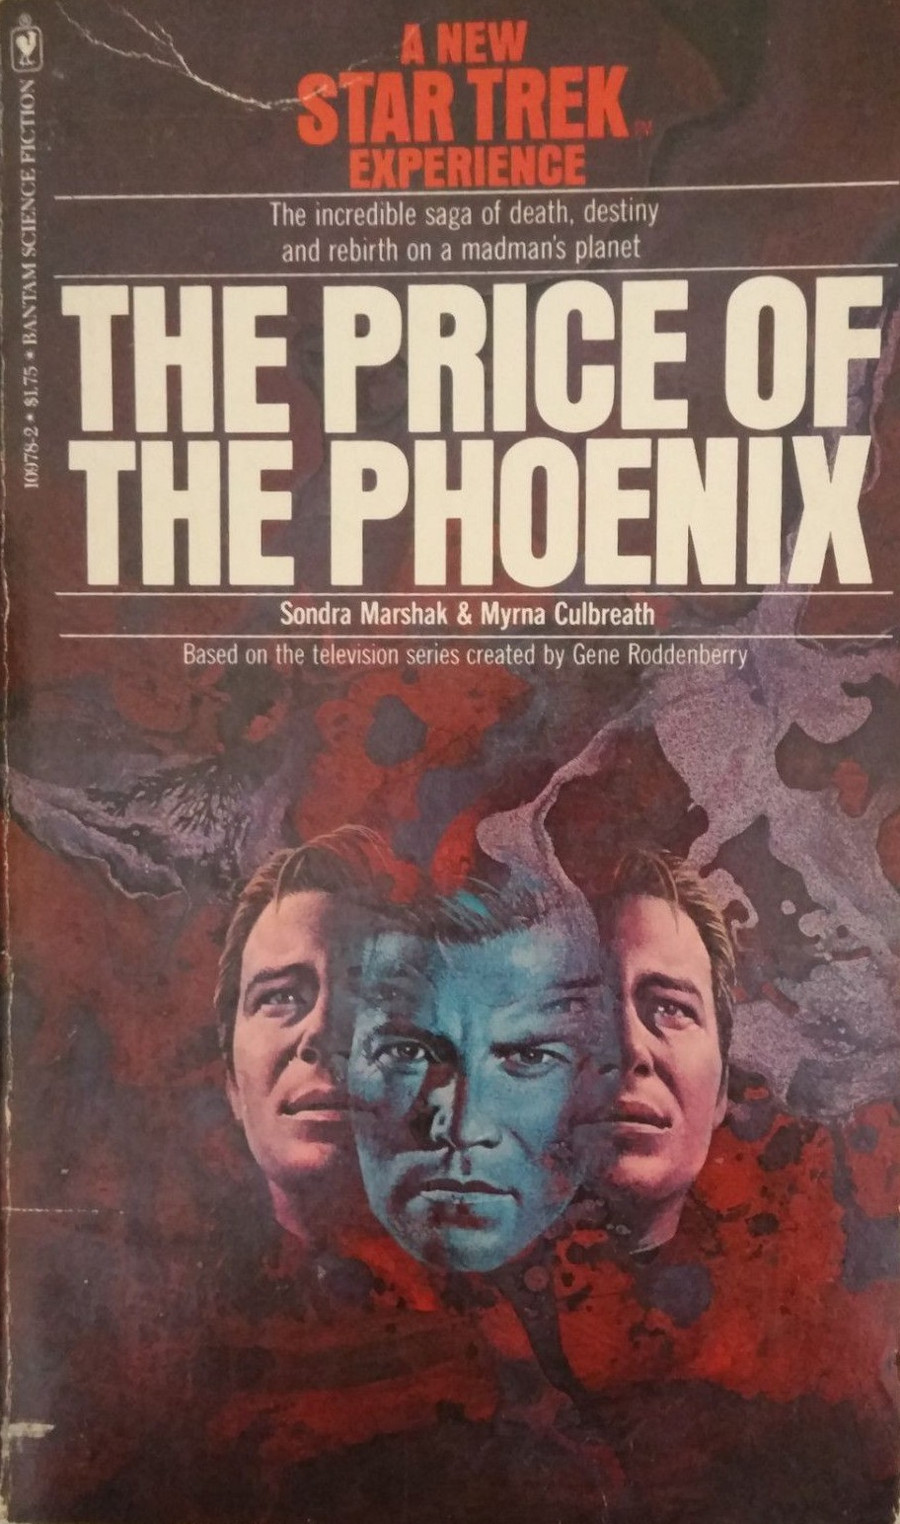 The Price of the Phoenix Jul 1977